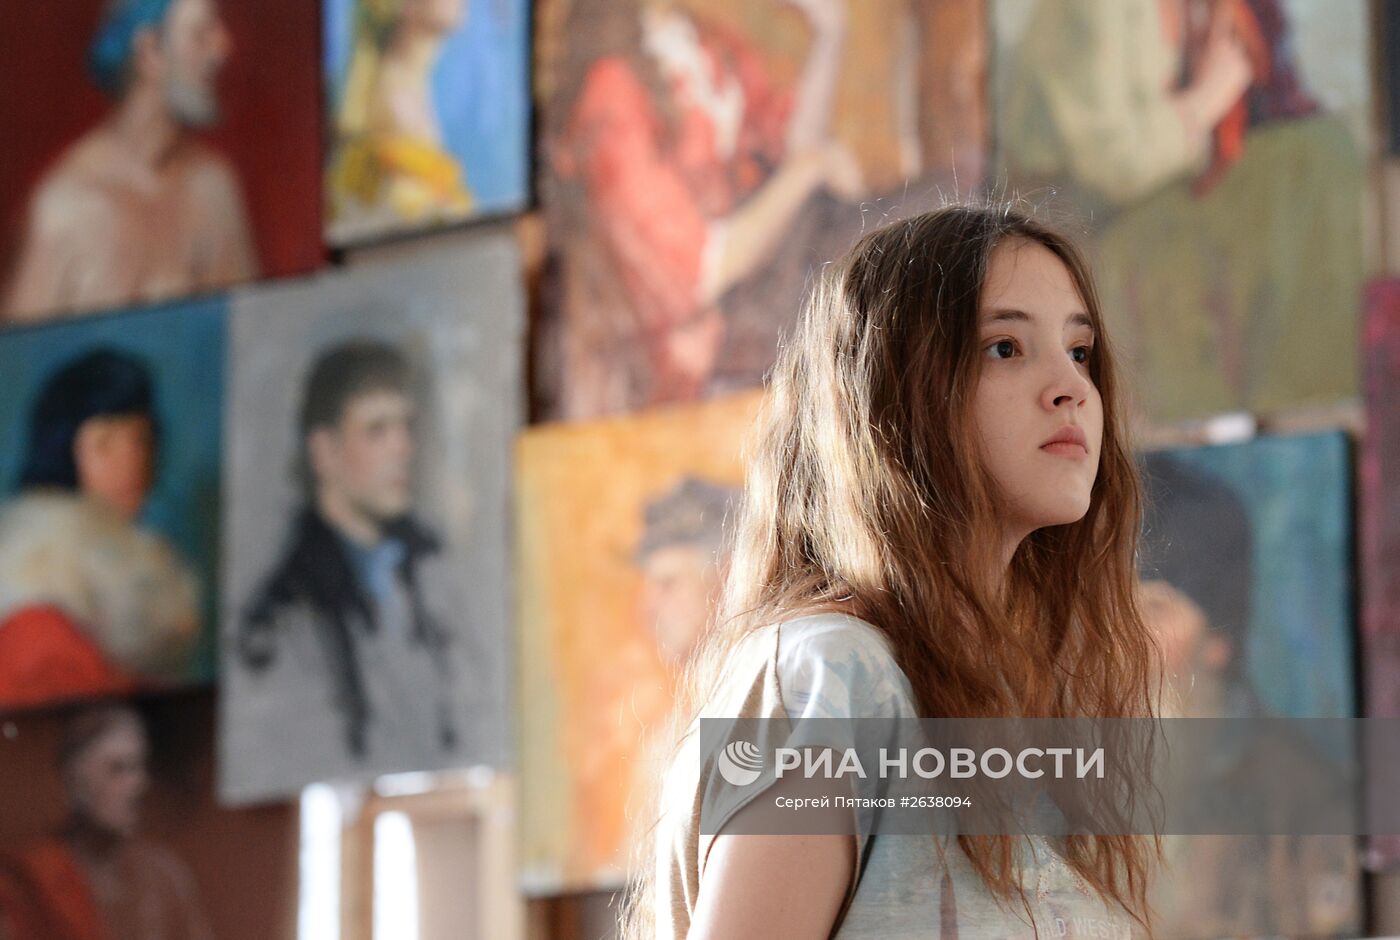 Российская академия живописи, ваяния и зодчества Ильи Глазунова